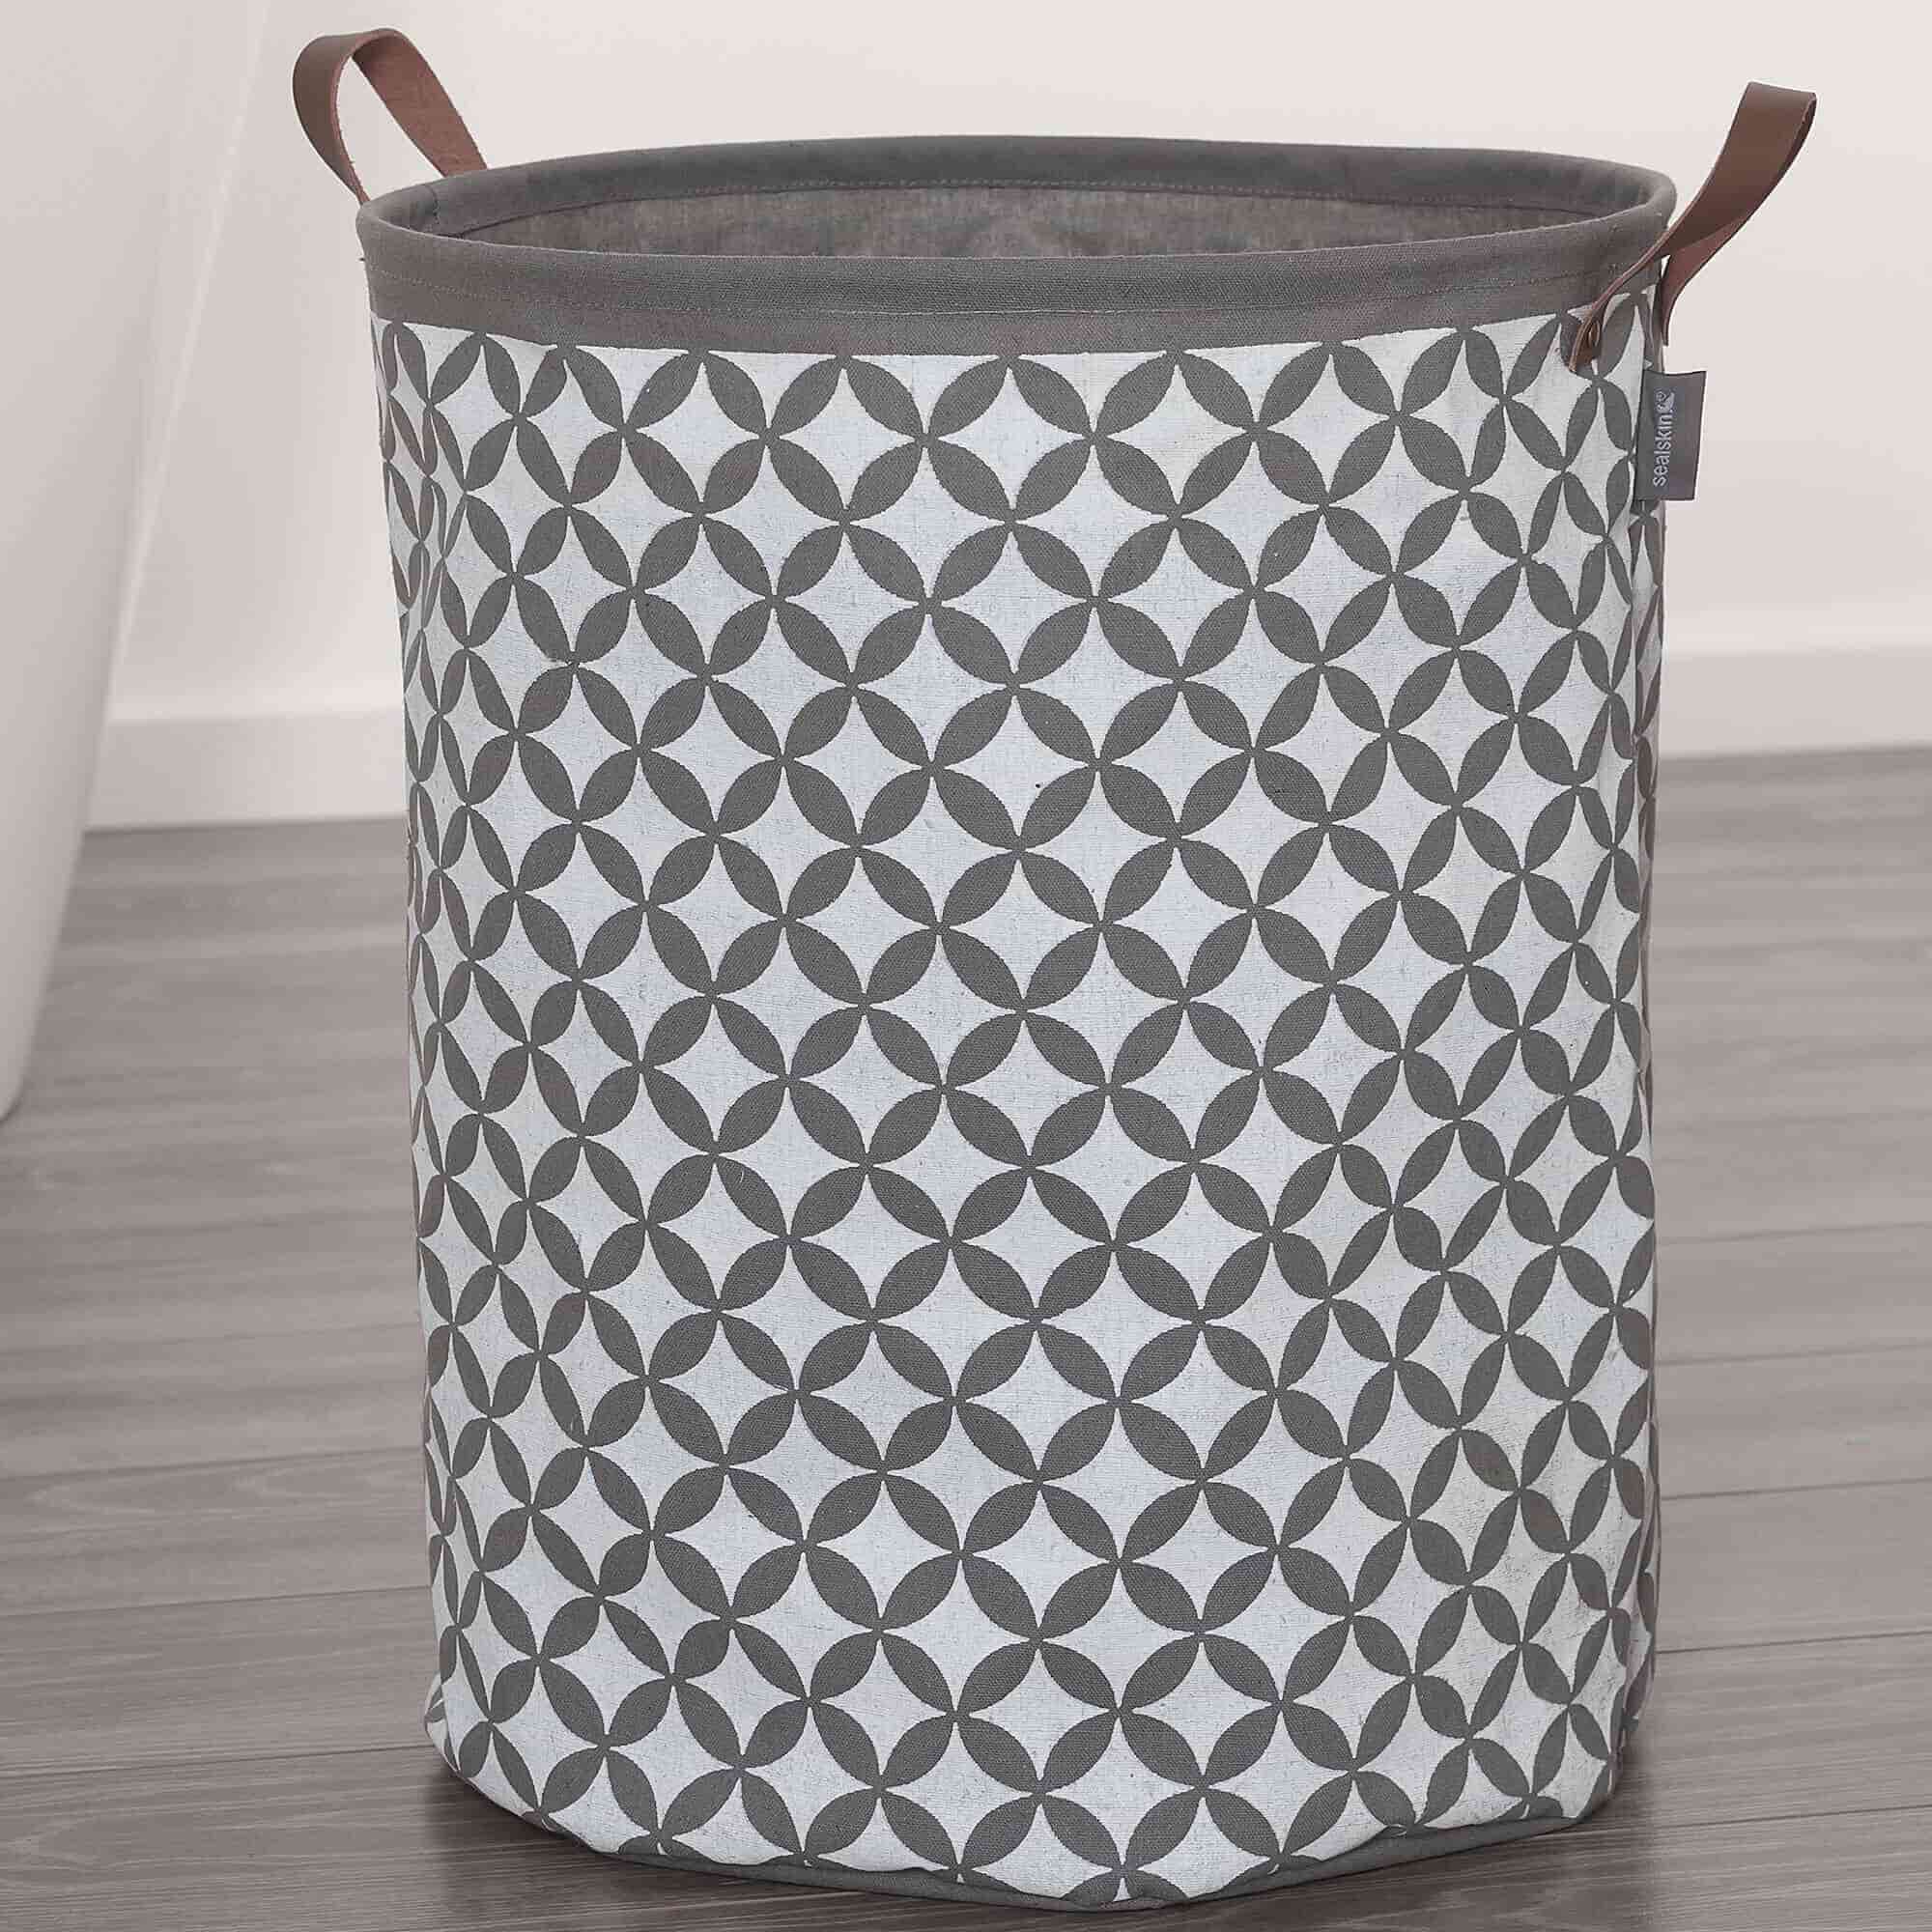 Laundry Hamper and Basket Design